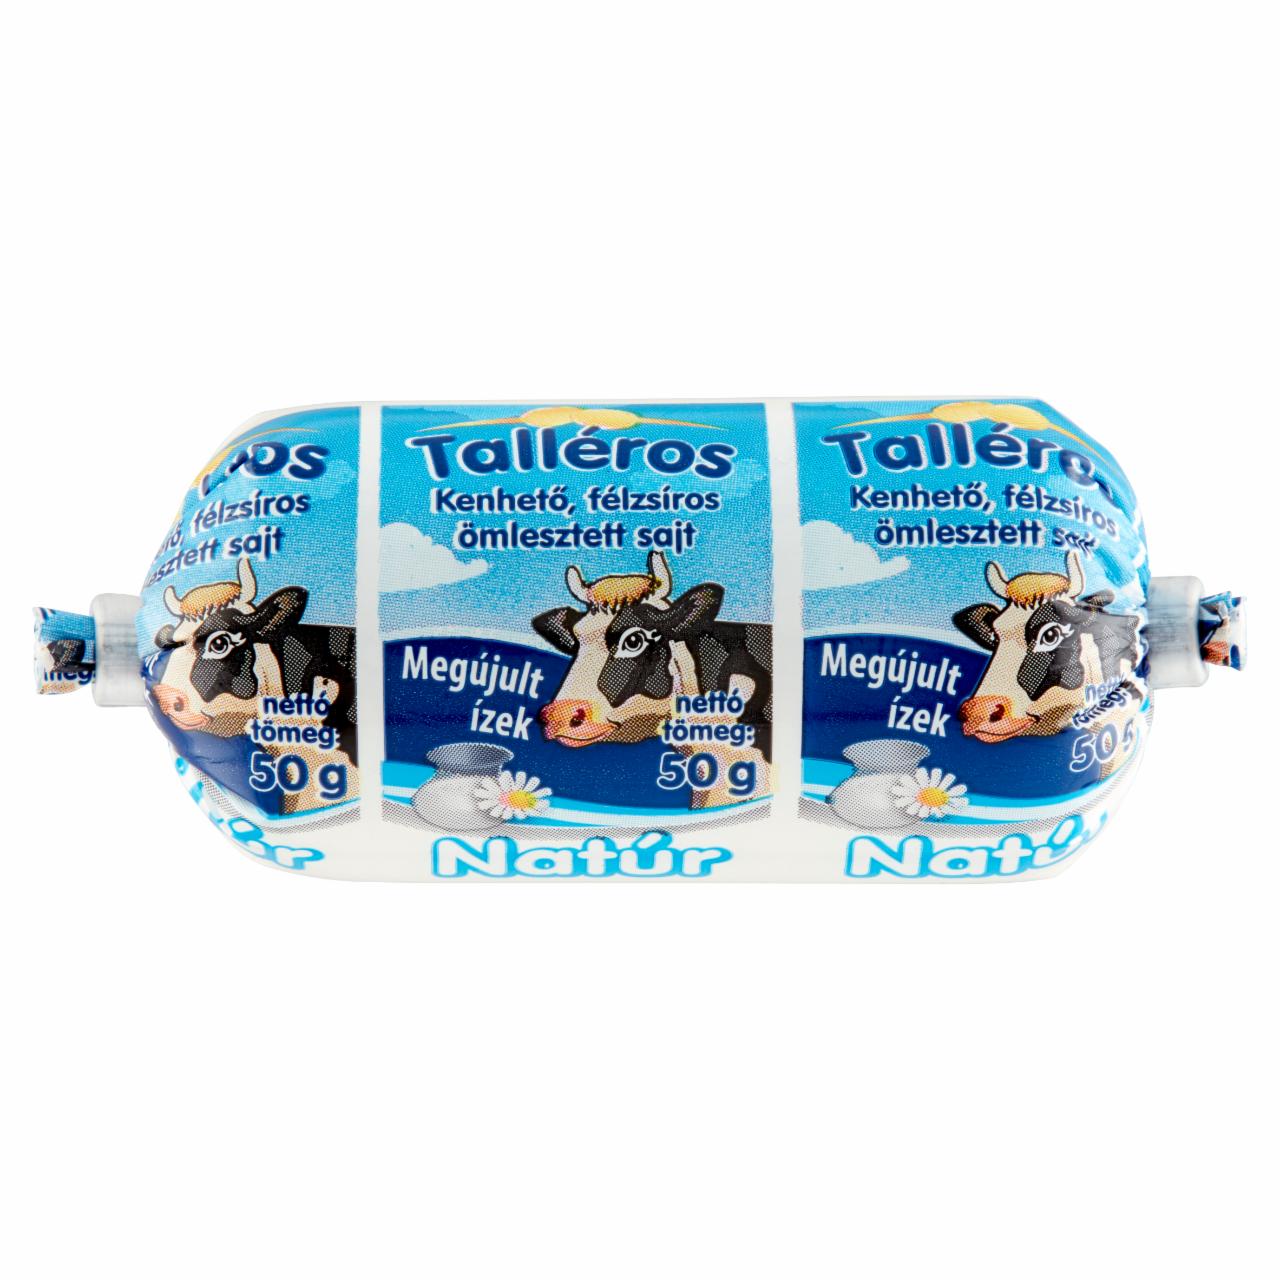 Képek - Talléros natúr, kenhető, félzsíros ömlesztett sajt 50 g